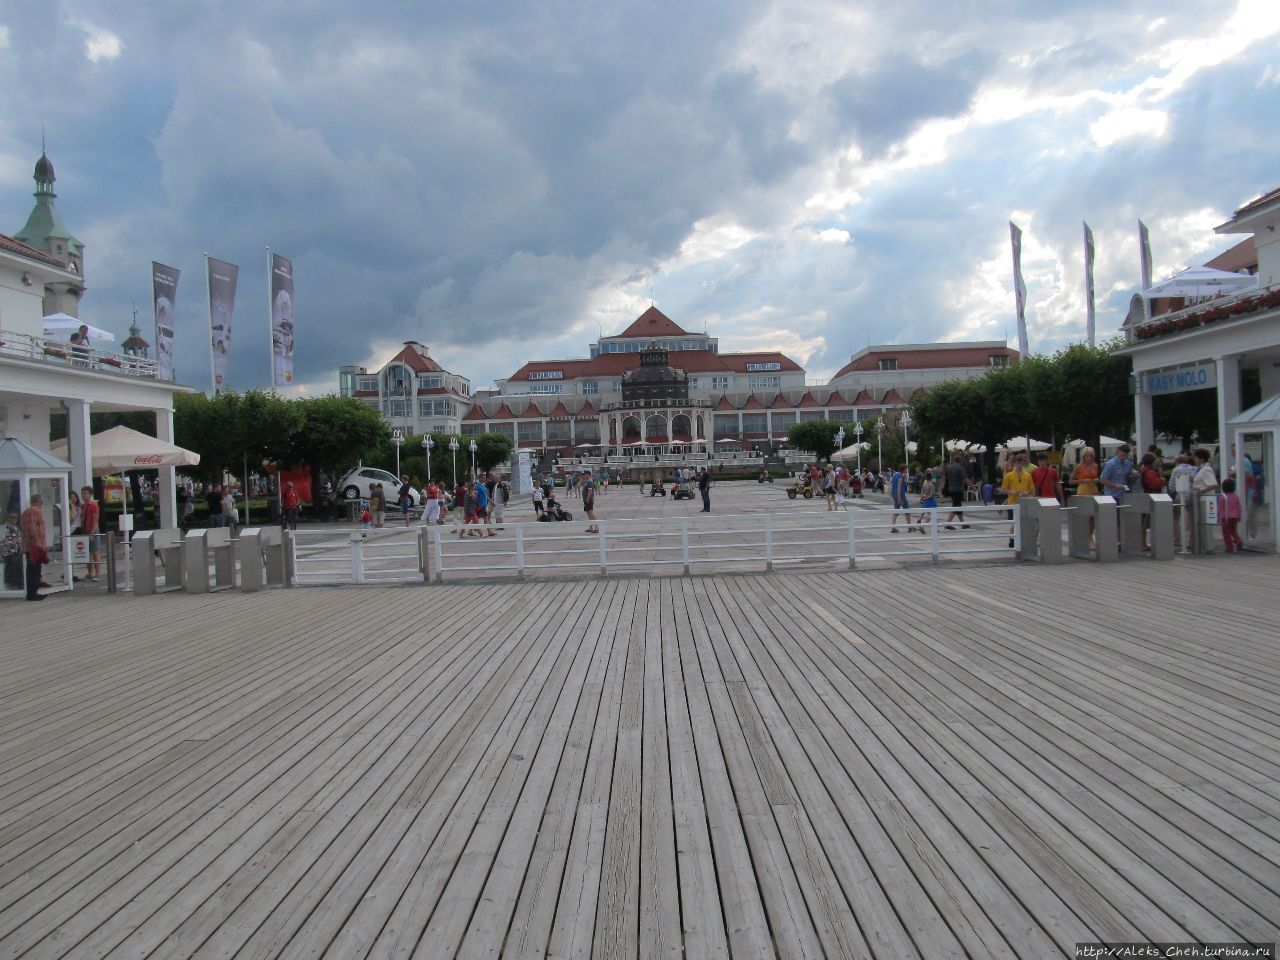 Мол — жемчужина курортного Сопота Сопот, Польша